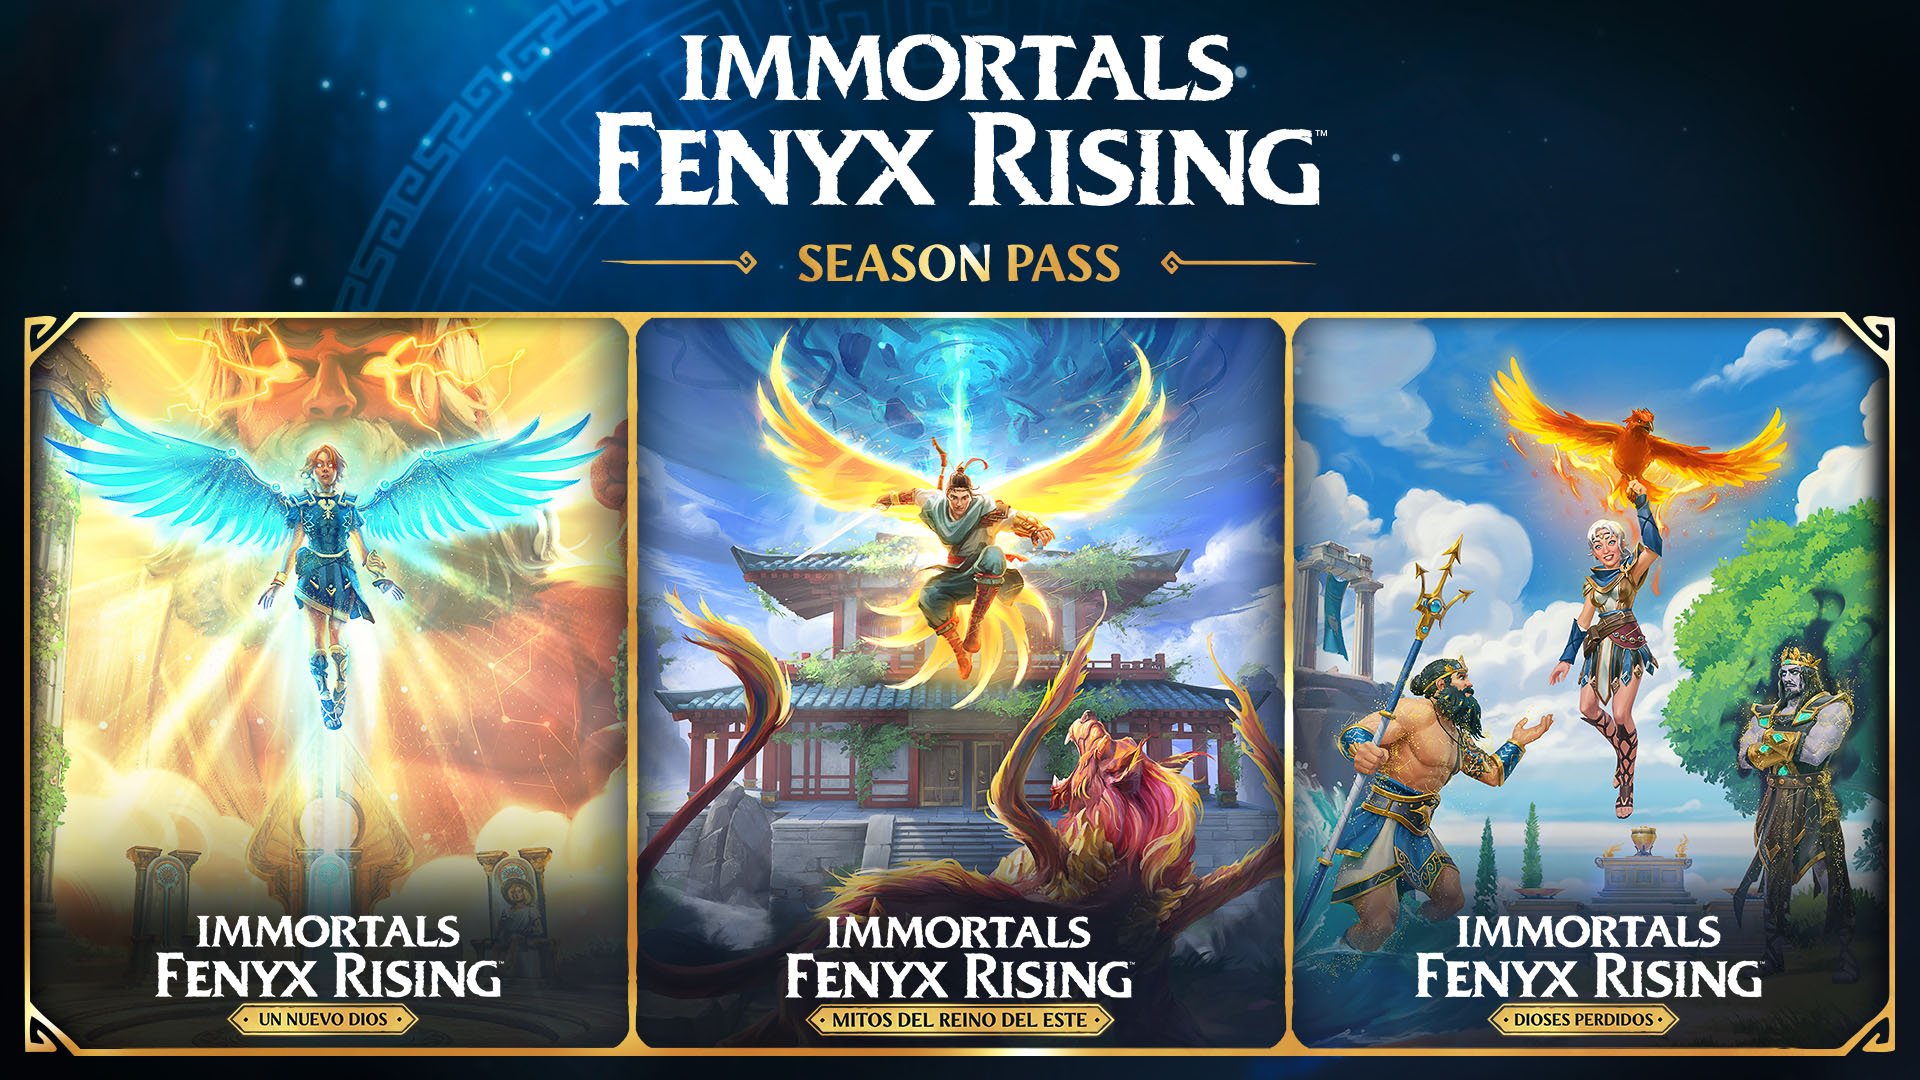 poslanzamiento de Immortals Fenyx Rising